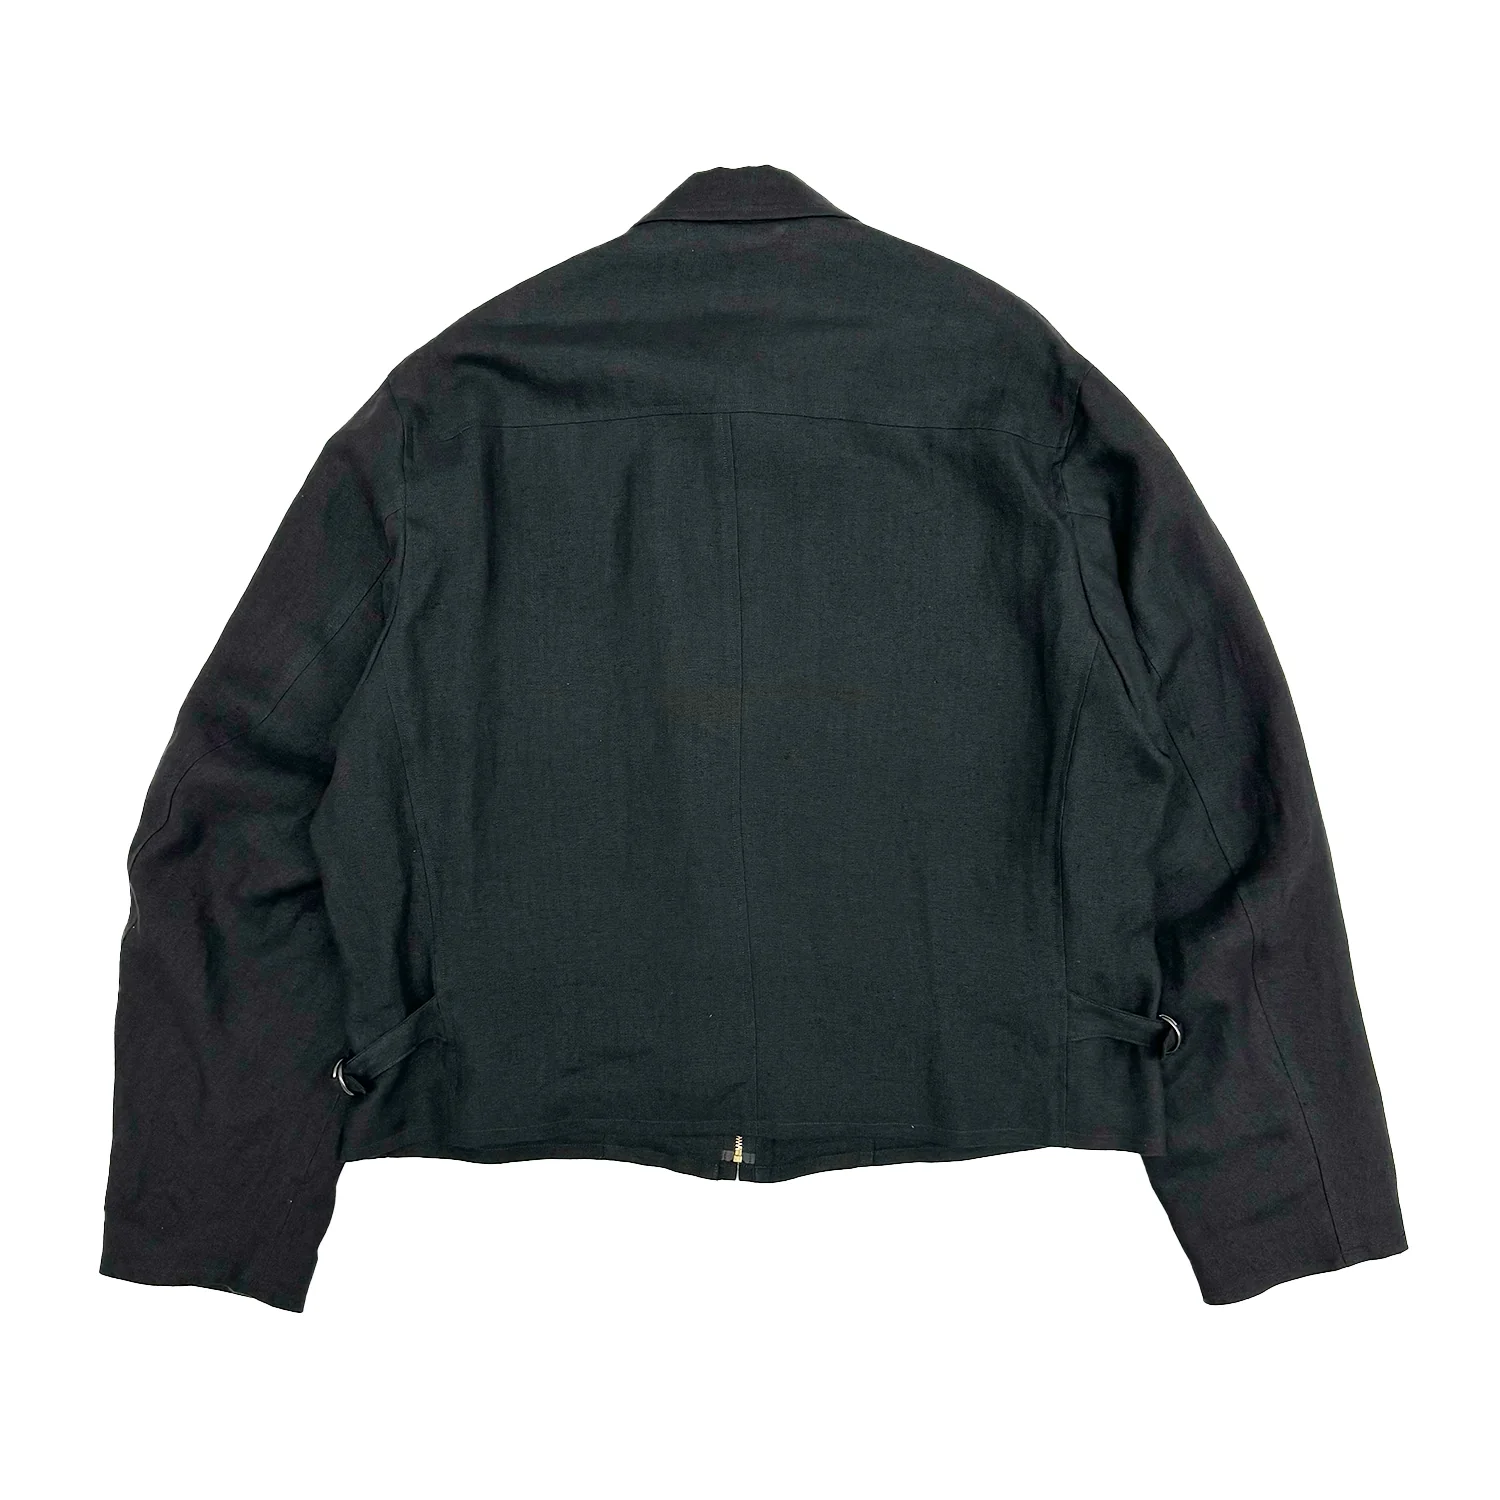 COMOLI / カナパジップショートジャケット